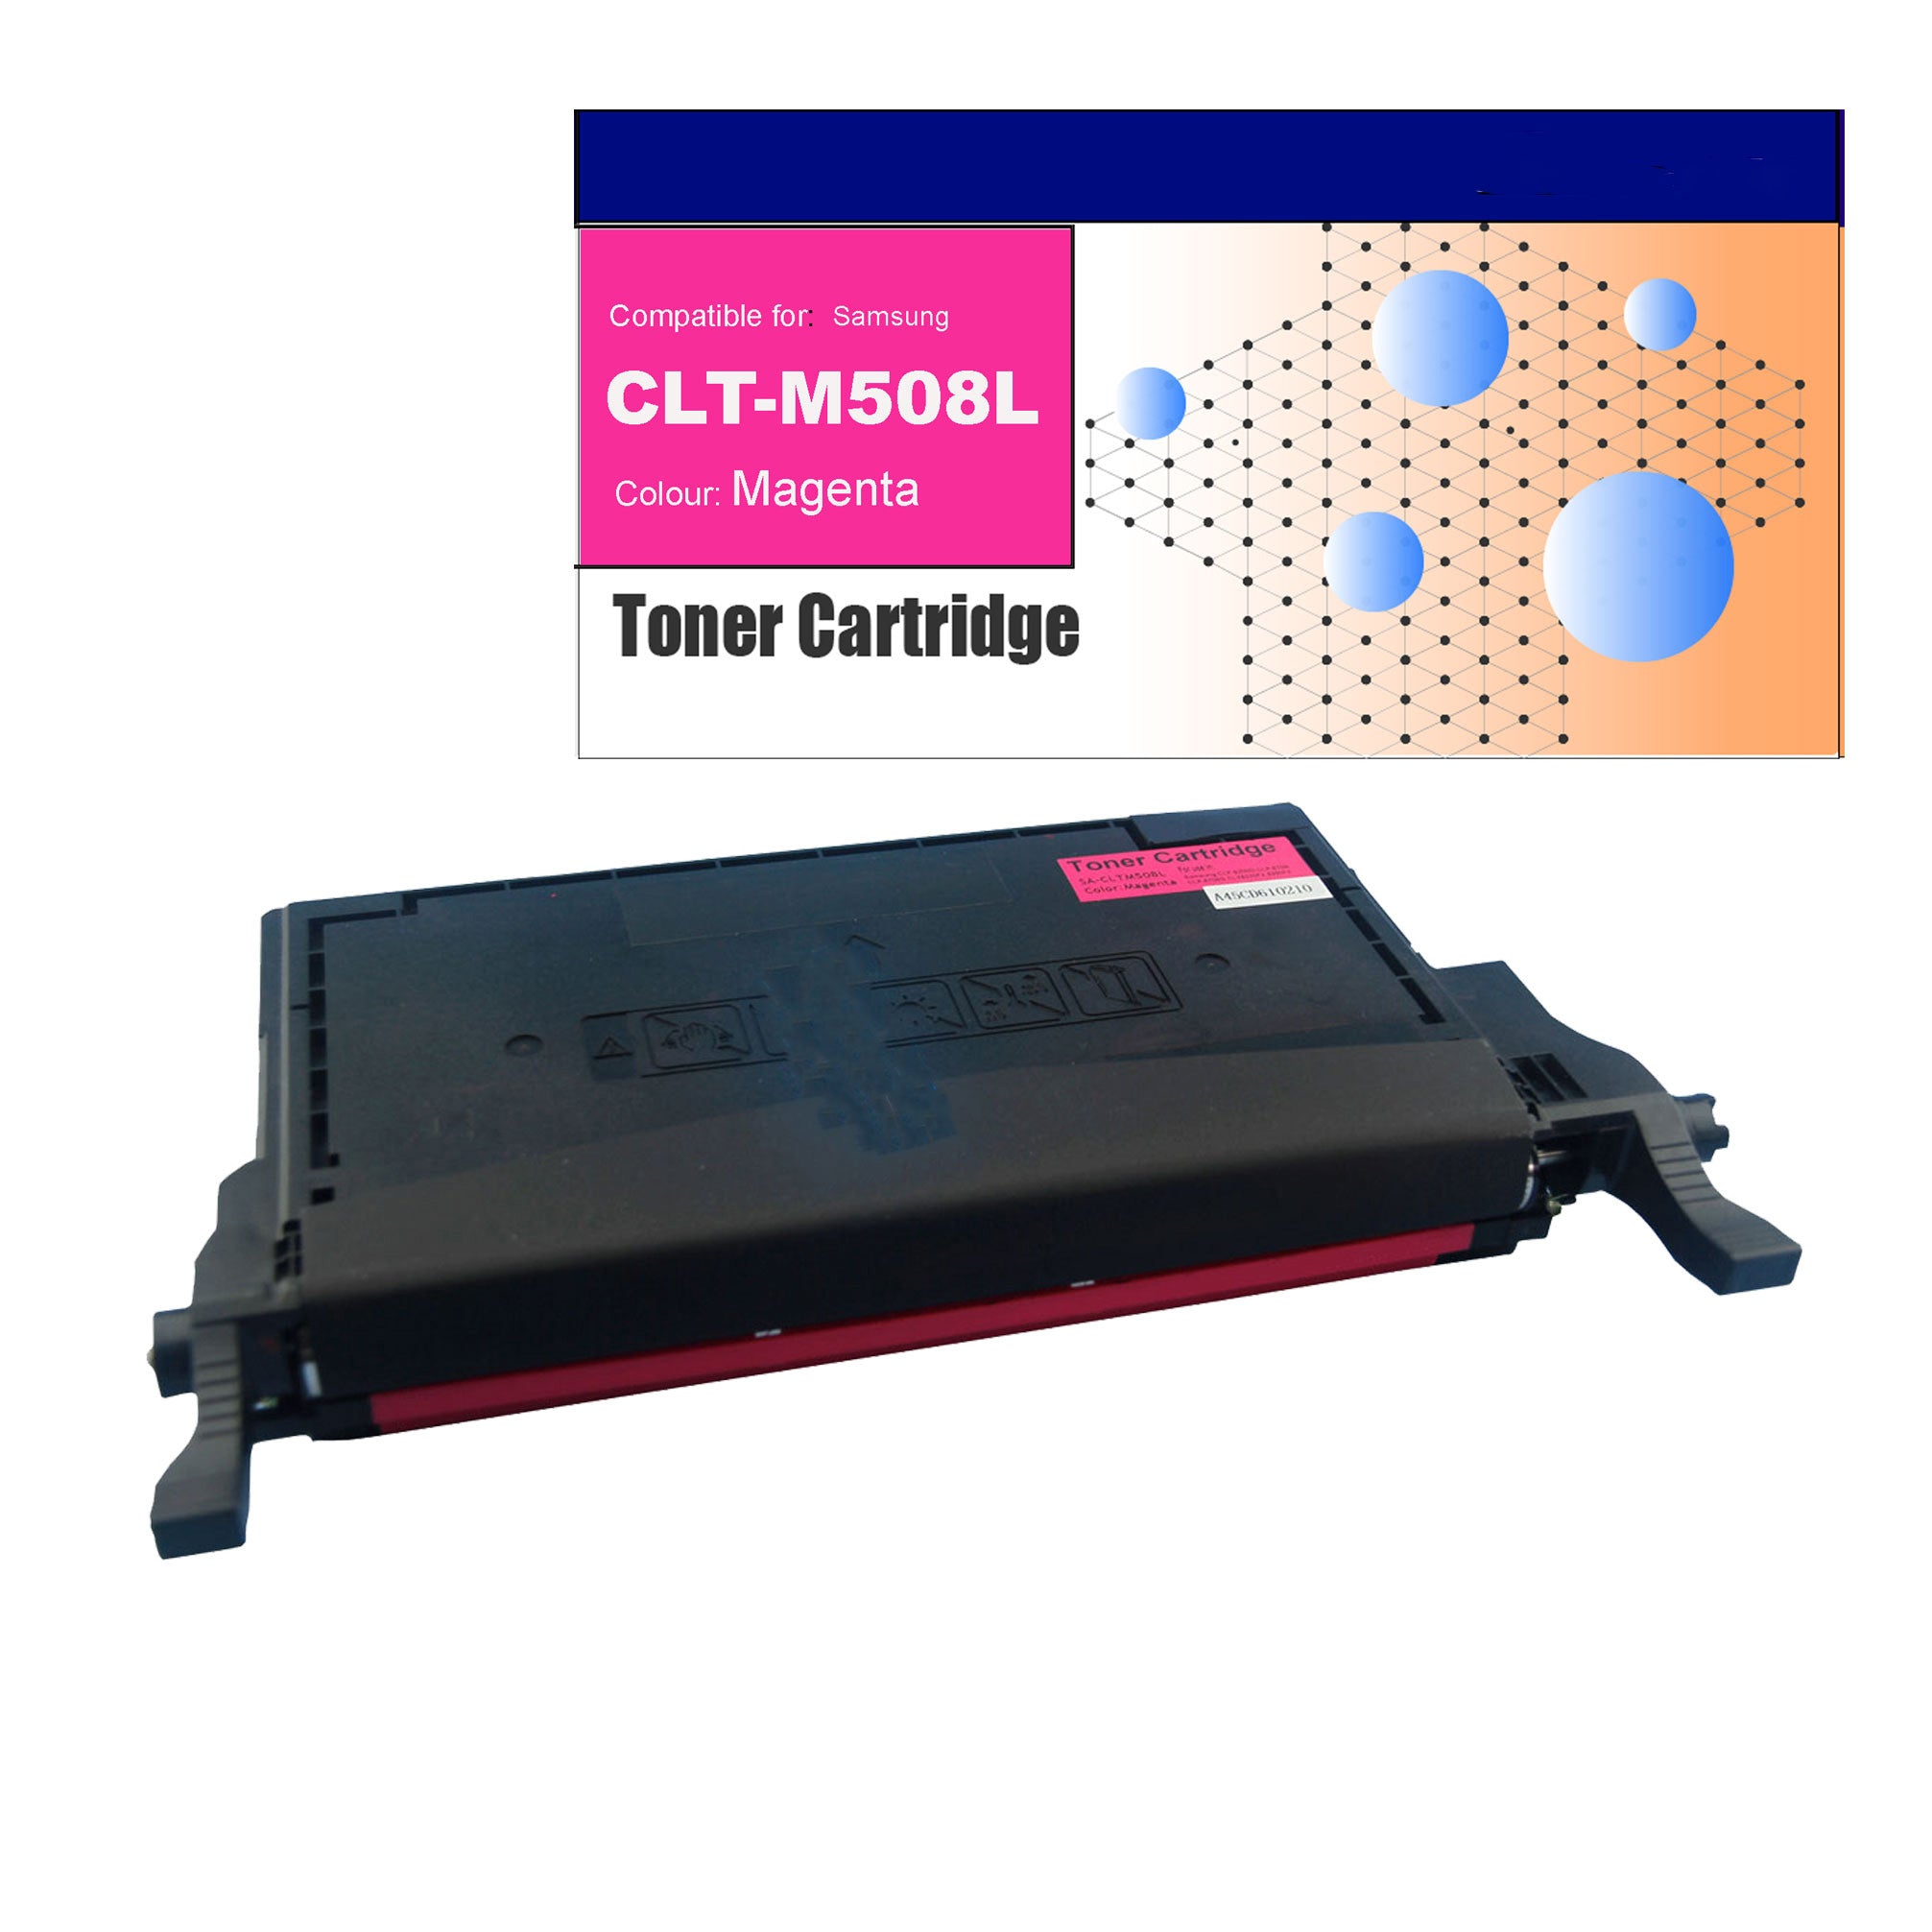 Compatible Toner for Samsung CLT-M508L Magenta Toner Cartridges